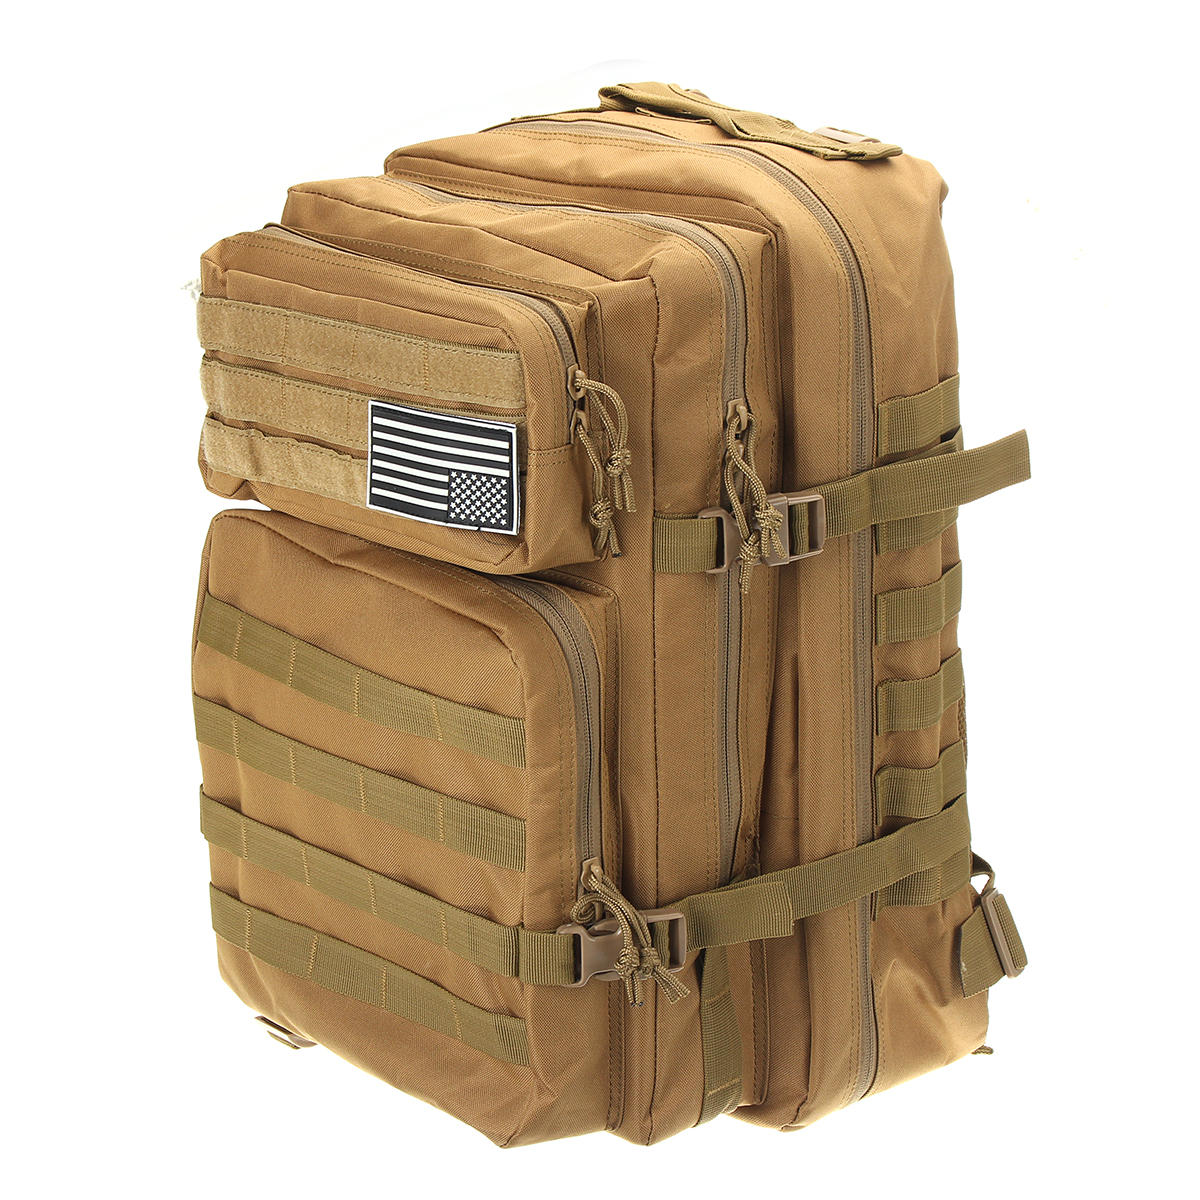 

45L Large На открытом воздухе Военный Тактический рюкзак Кемпинг Рюкзак для путешествий Пешие прогулки Сумка